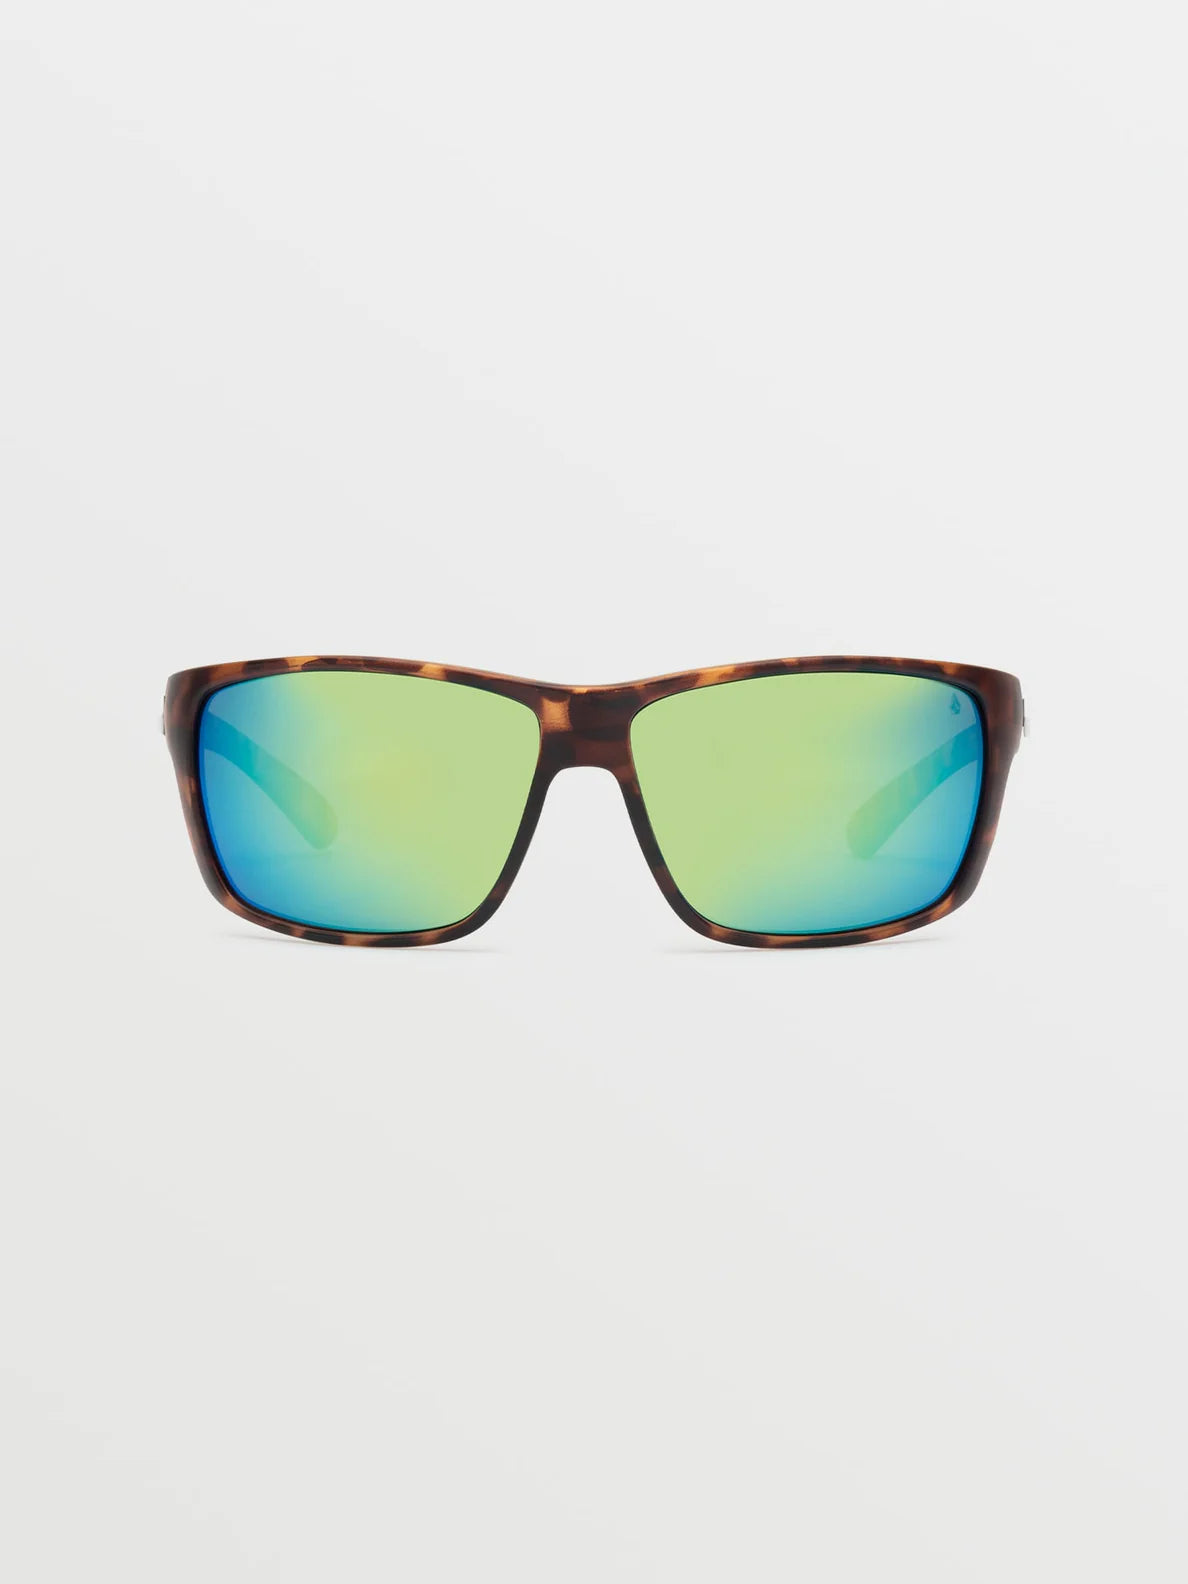 Gafas Volcom Roll - Matte Tort / Green Polar | Gafas de sol | Volcom Shop | surfdevils.com